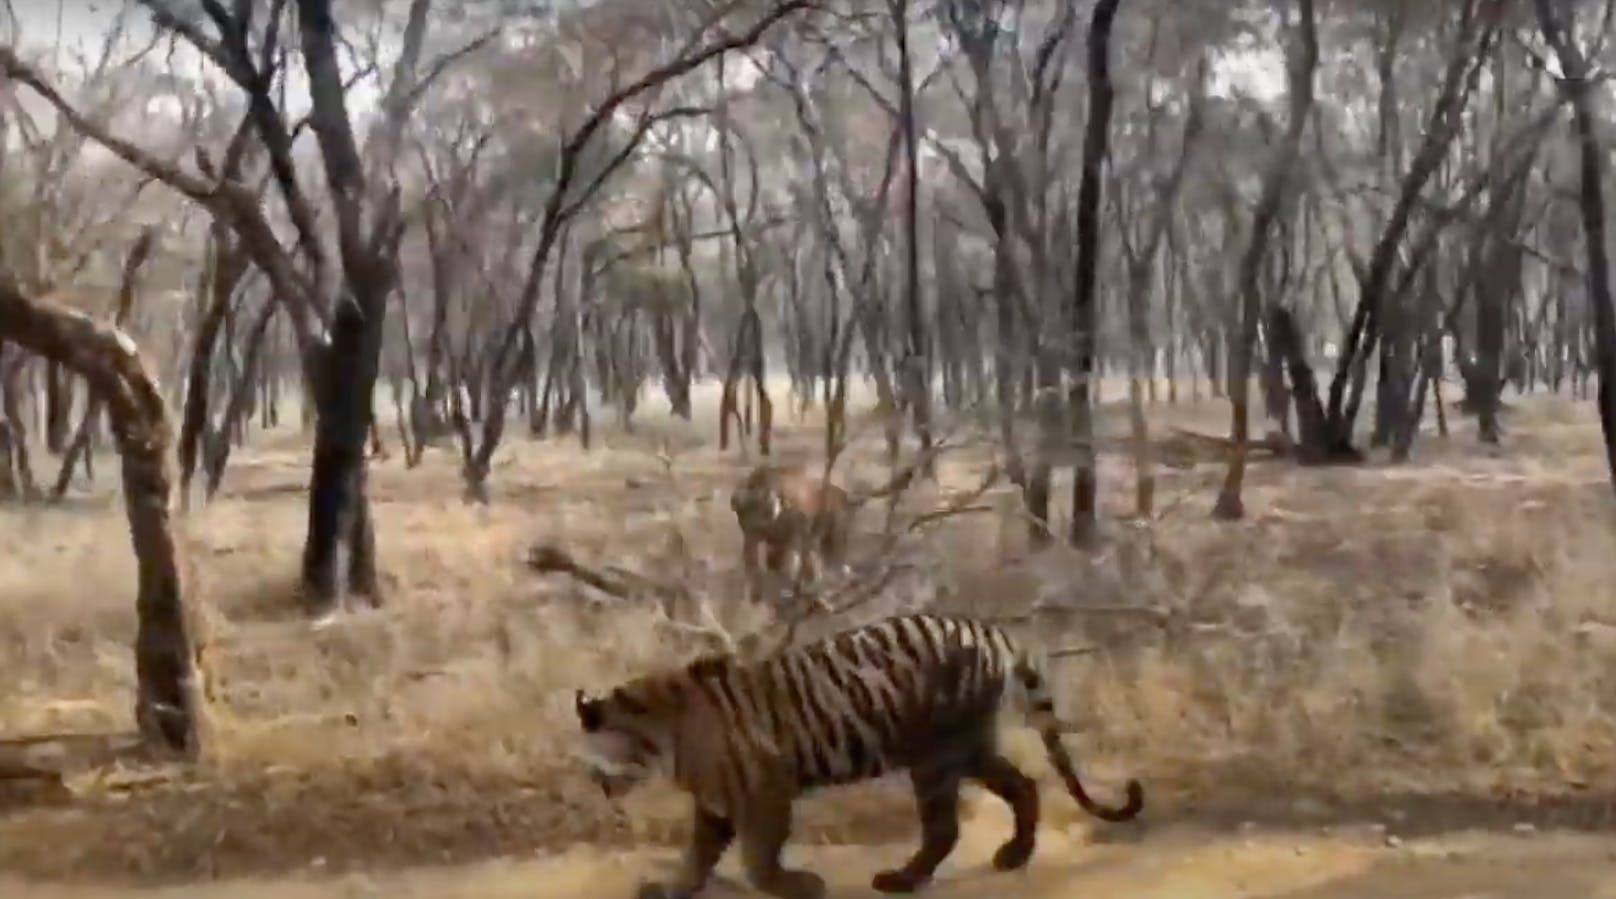 Eine der Tigerinnen wechselt die Richtung und springt auf ihre Schwester zu.